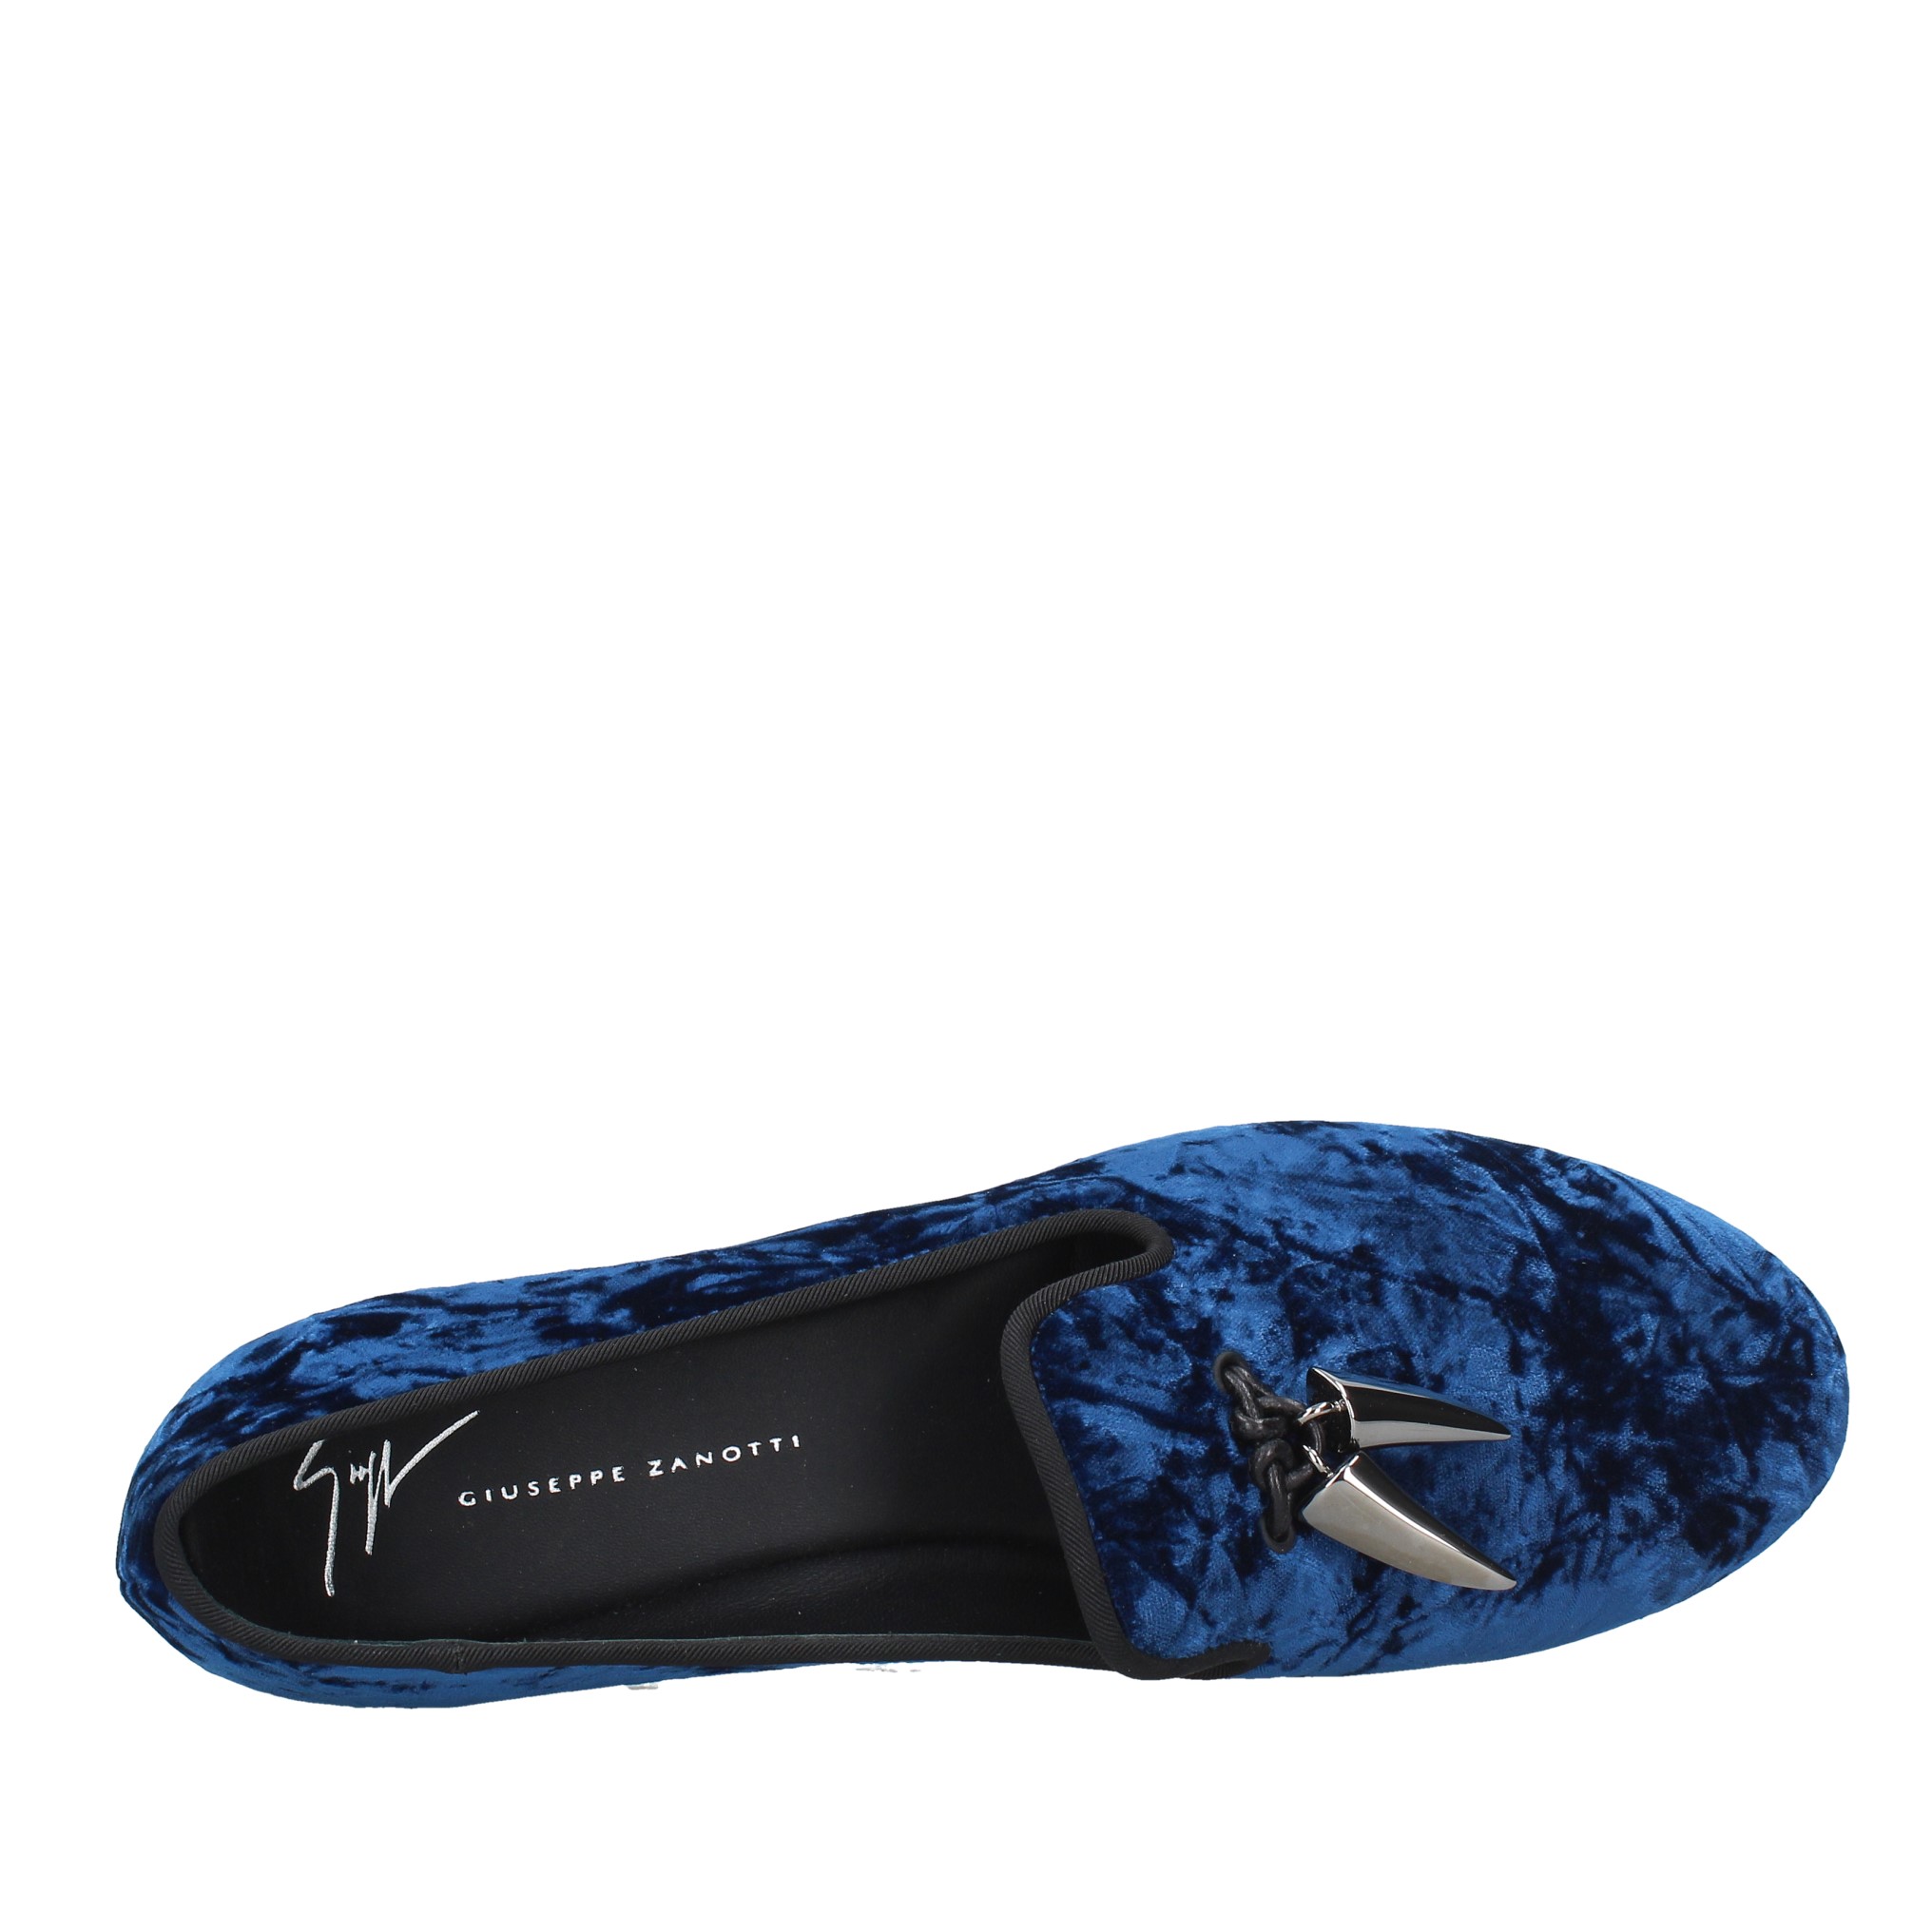 Loafers and slip-ons Blue - GIUSEPPE ZANOTTI - Ginevra calzature